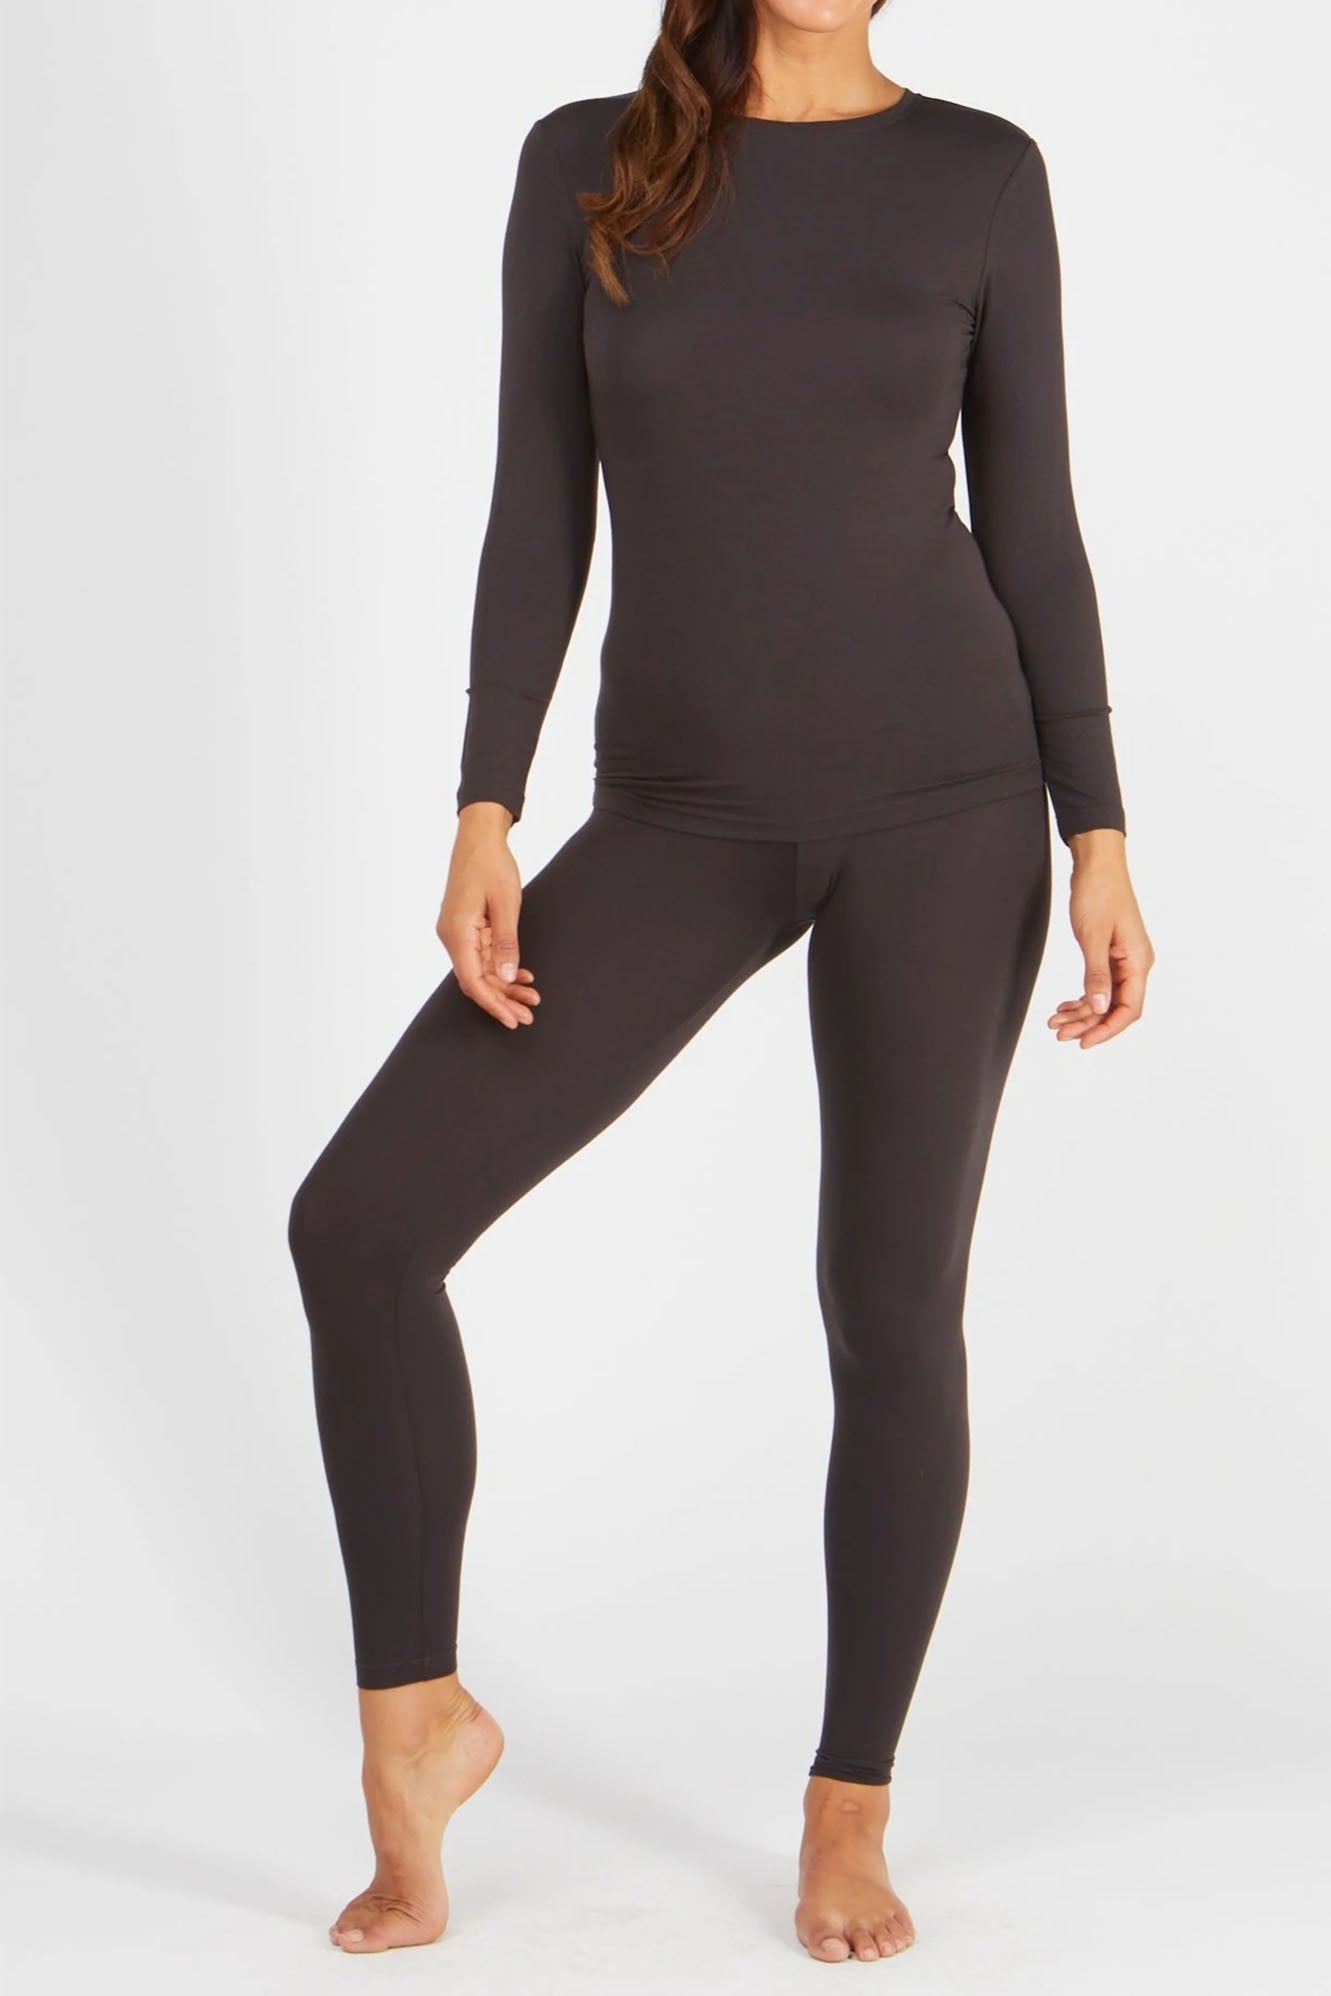 Woman wearing Tani 89118 leggings in licorice